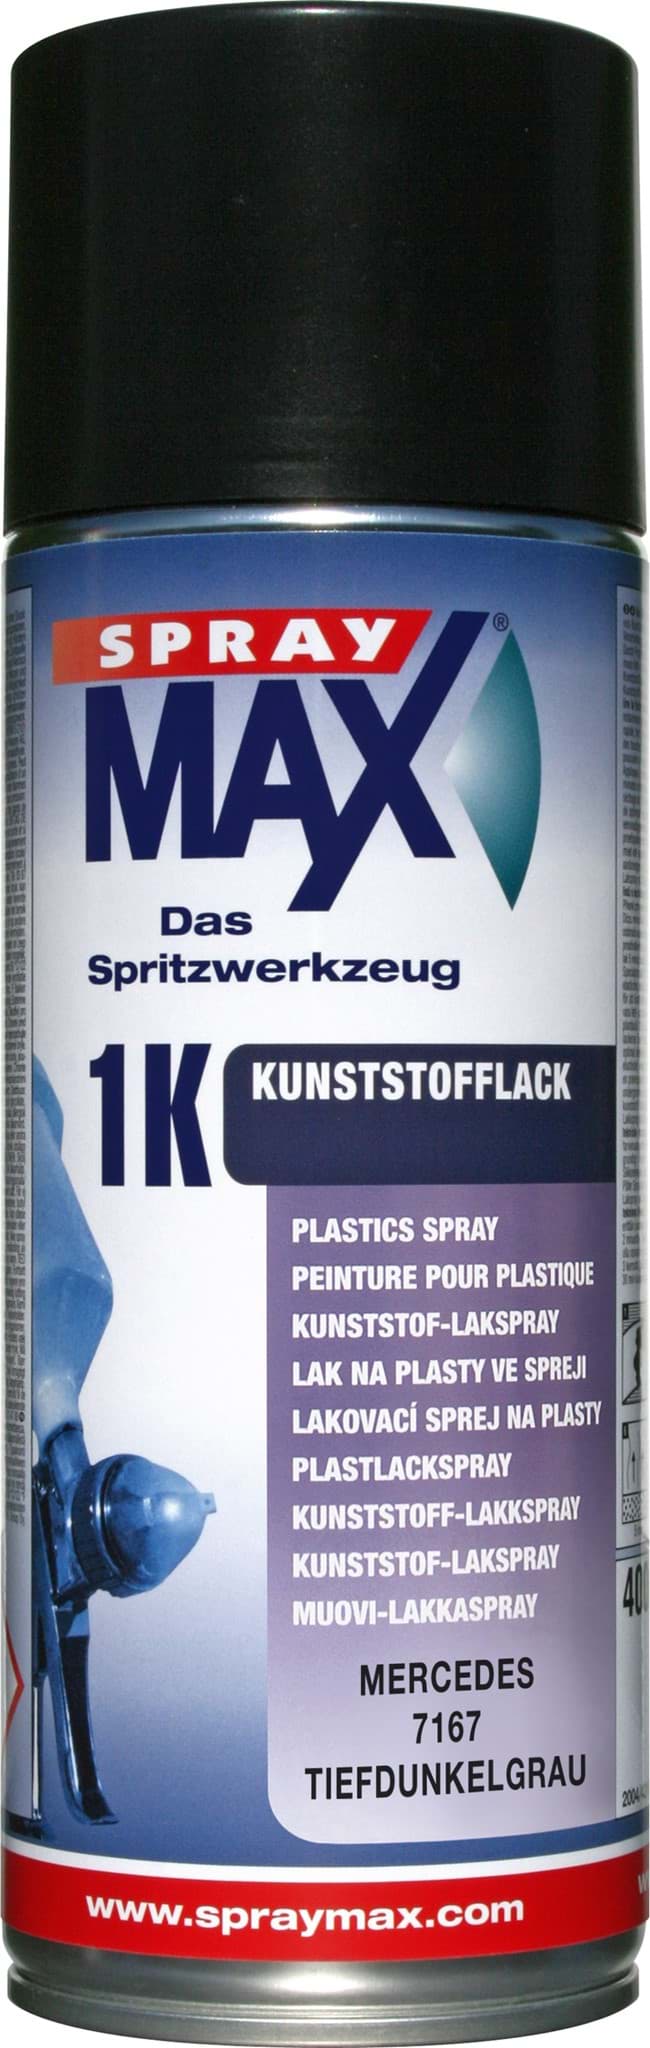 Obraz SprayMax 1K Kunststofflack Mercedes 7167 tiefdunkelgrau